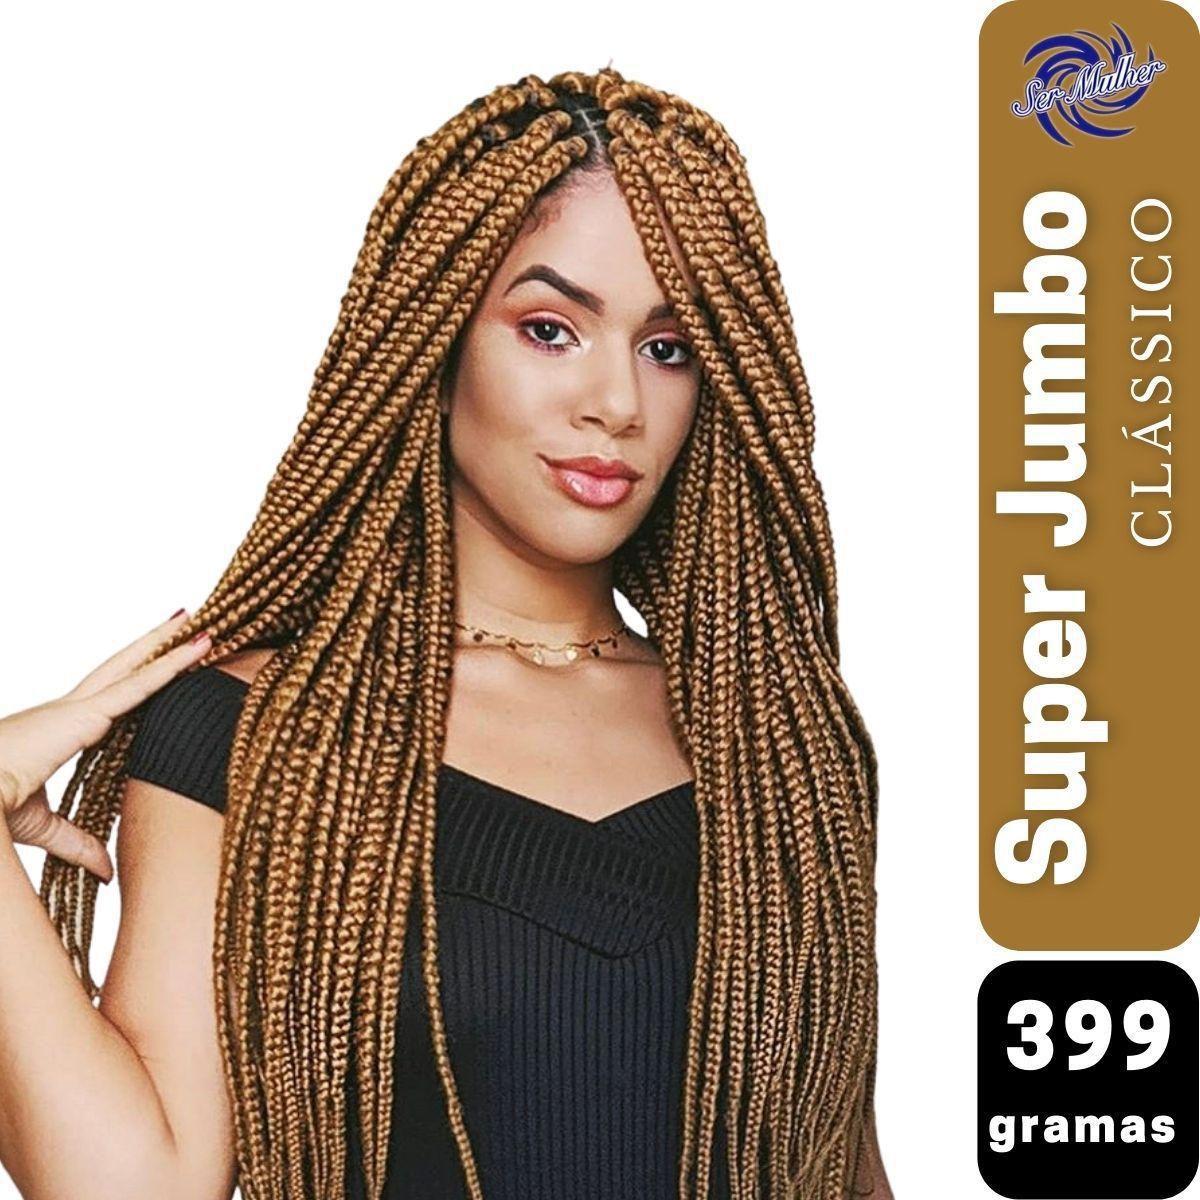 Jumbo Kanekalon Para Tranças Original Ser Mulher Pacote com 399 Gramas  Cores Clássicas 65 cm Jumbão Box Braids - Mega Hair - Magazine Luiza